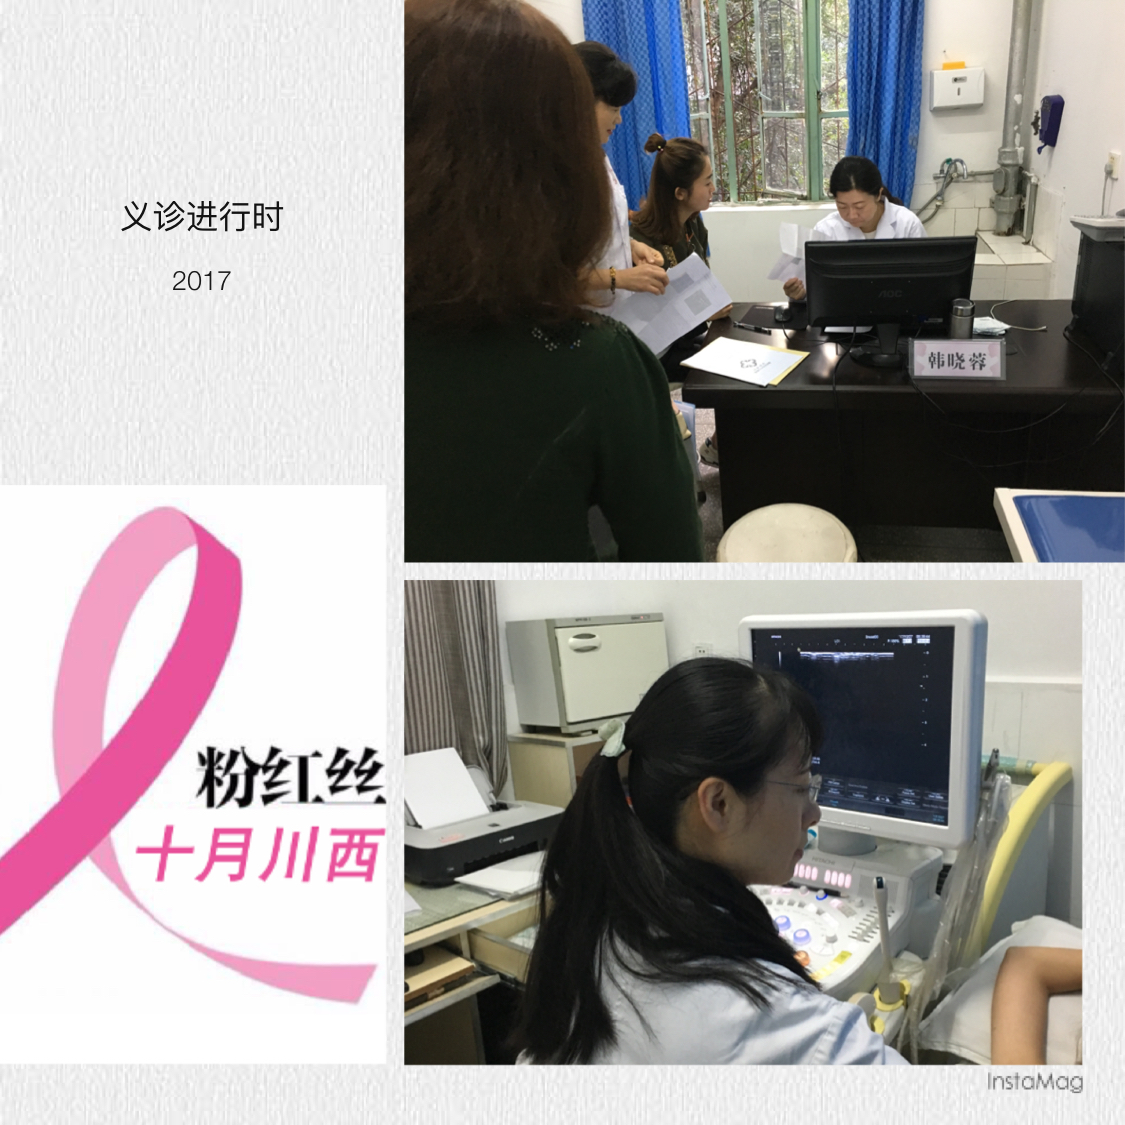 乳腺科团队远赴川西积极参与“乳腺癌防治月大型义诊”